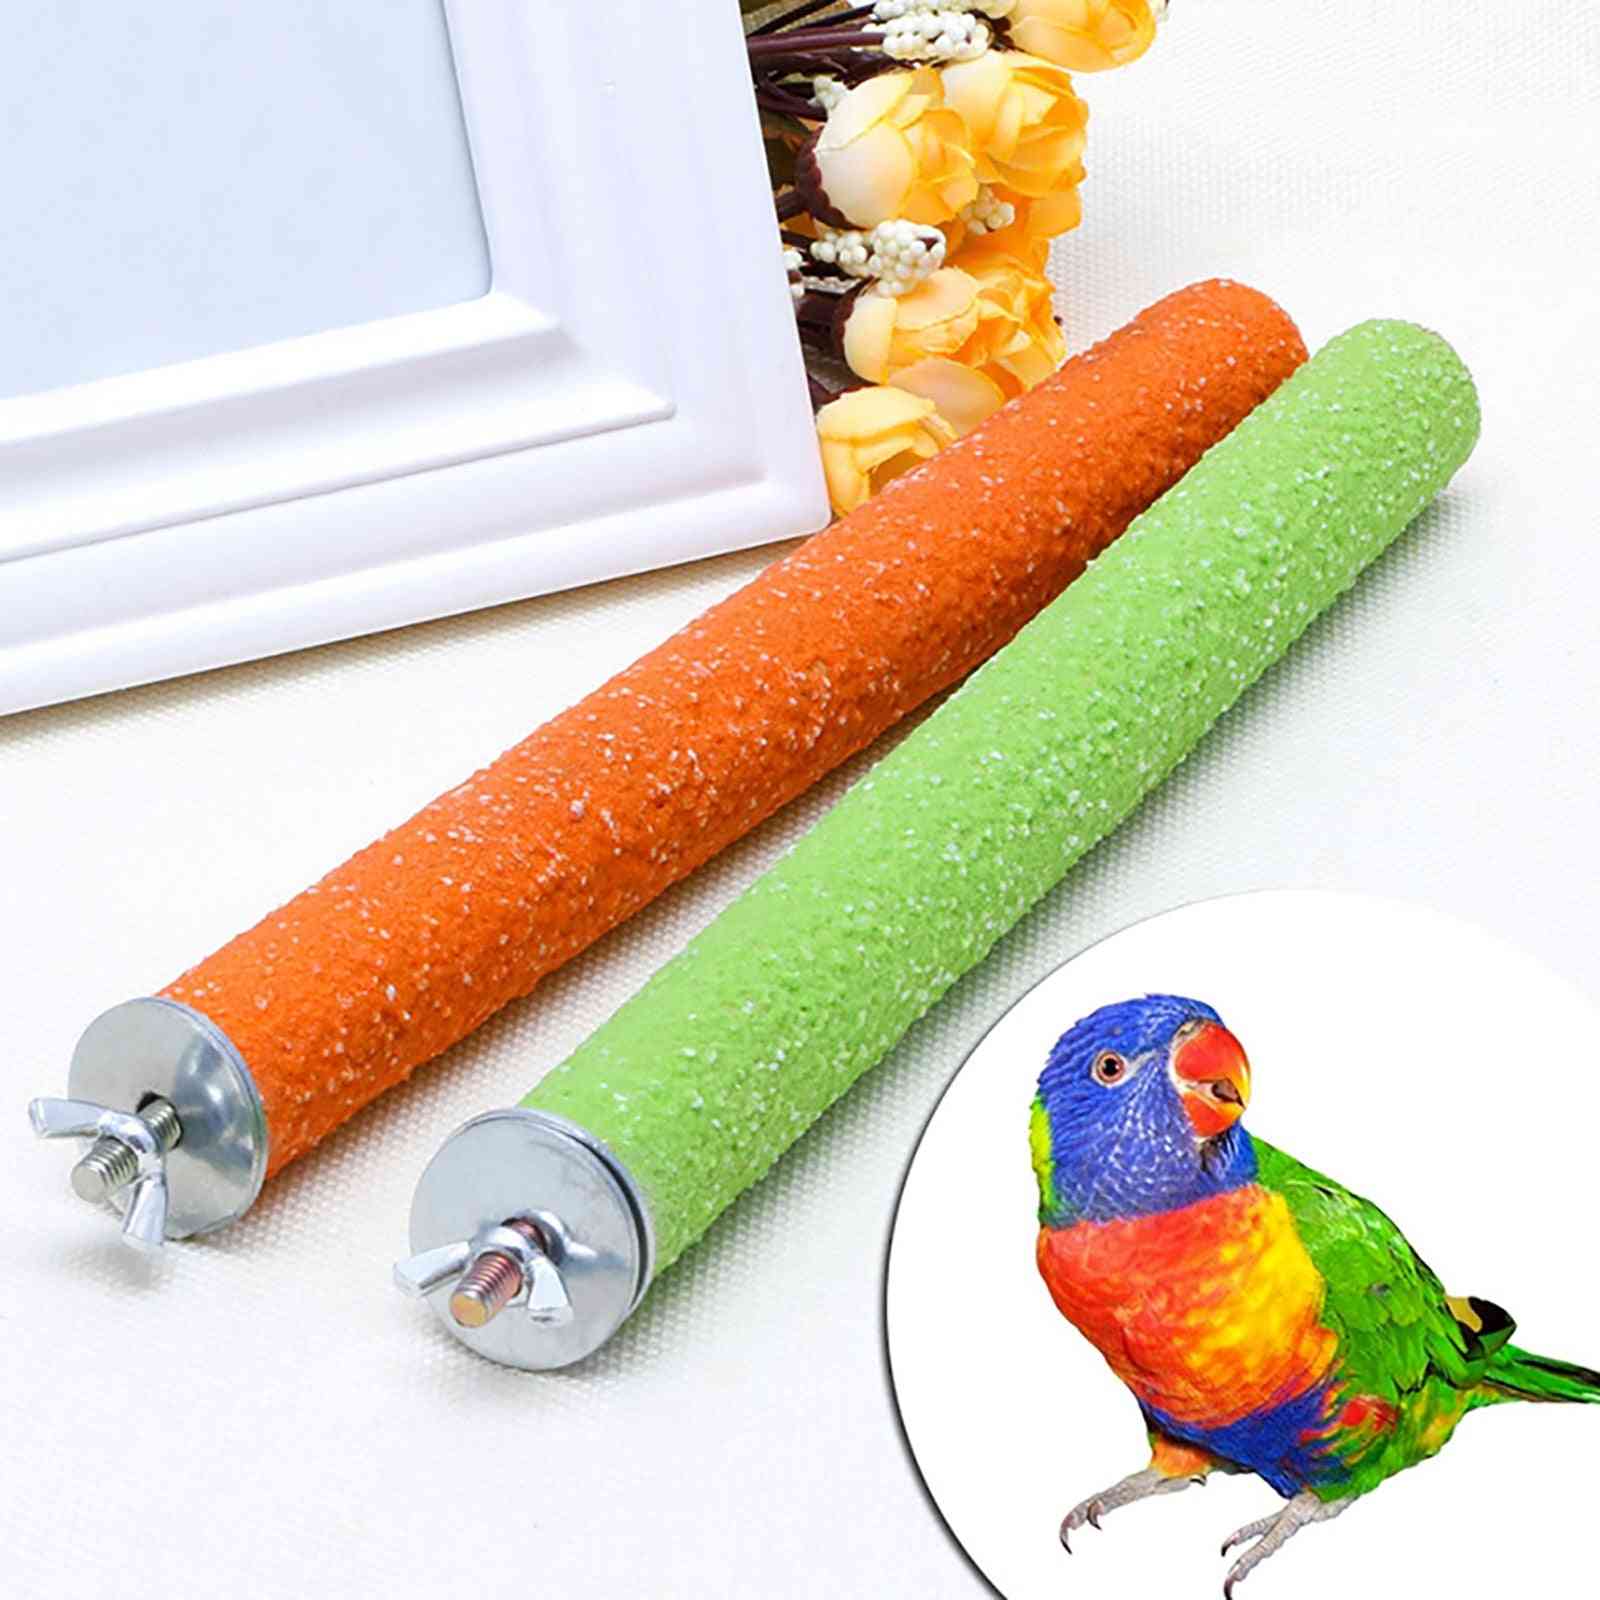 Pasăre papagal biban suport titular - gheare de măcinat accesorii platformă cușcă pentru animale mestecați jucării furnituri pentru păsări